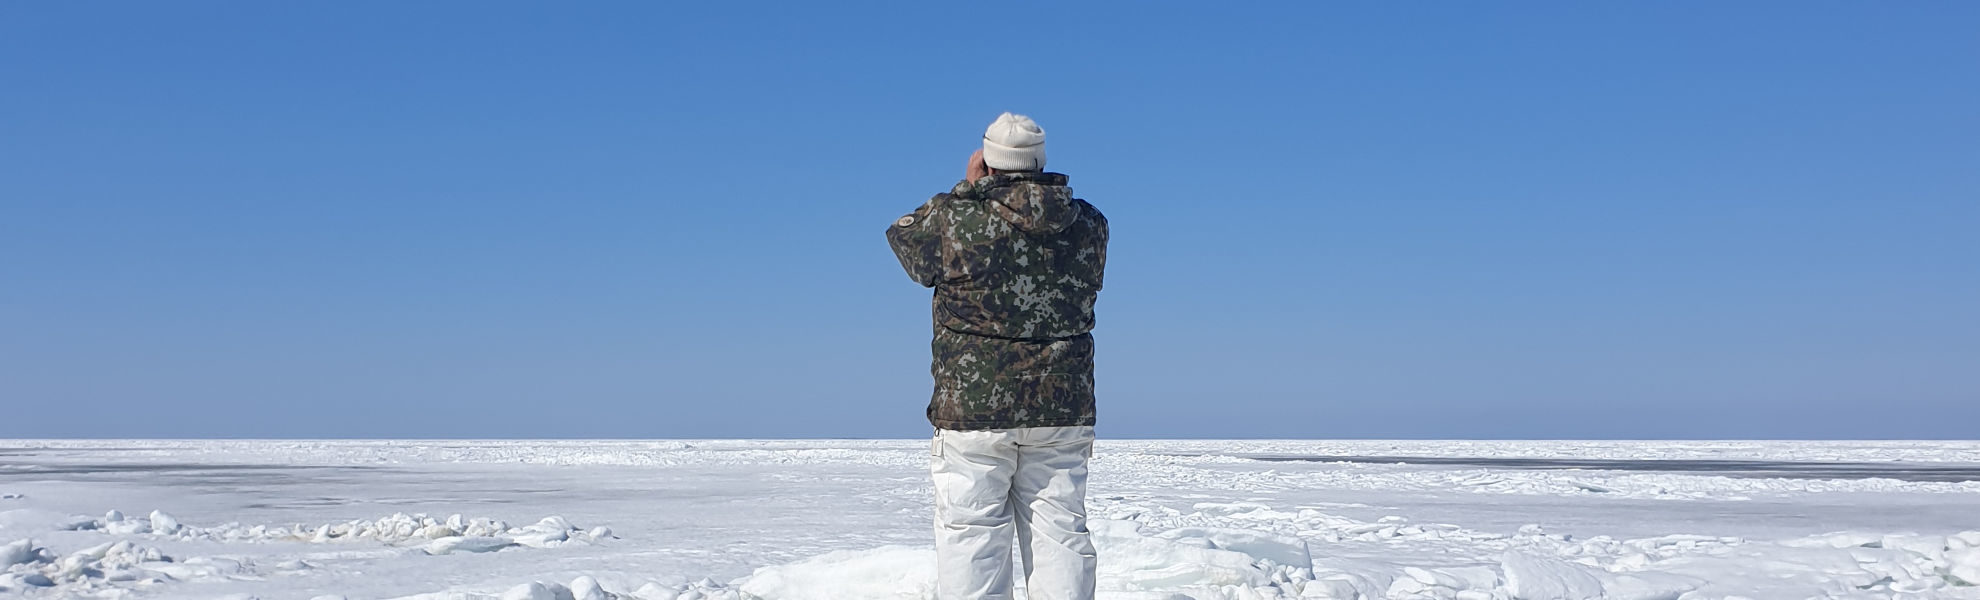   Robbenjagd in Finnland – das hätte ich nicht erwartet